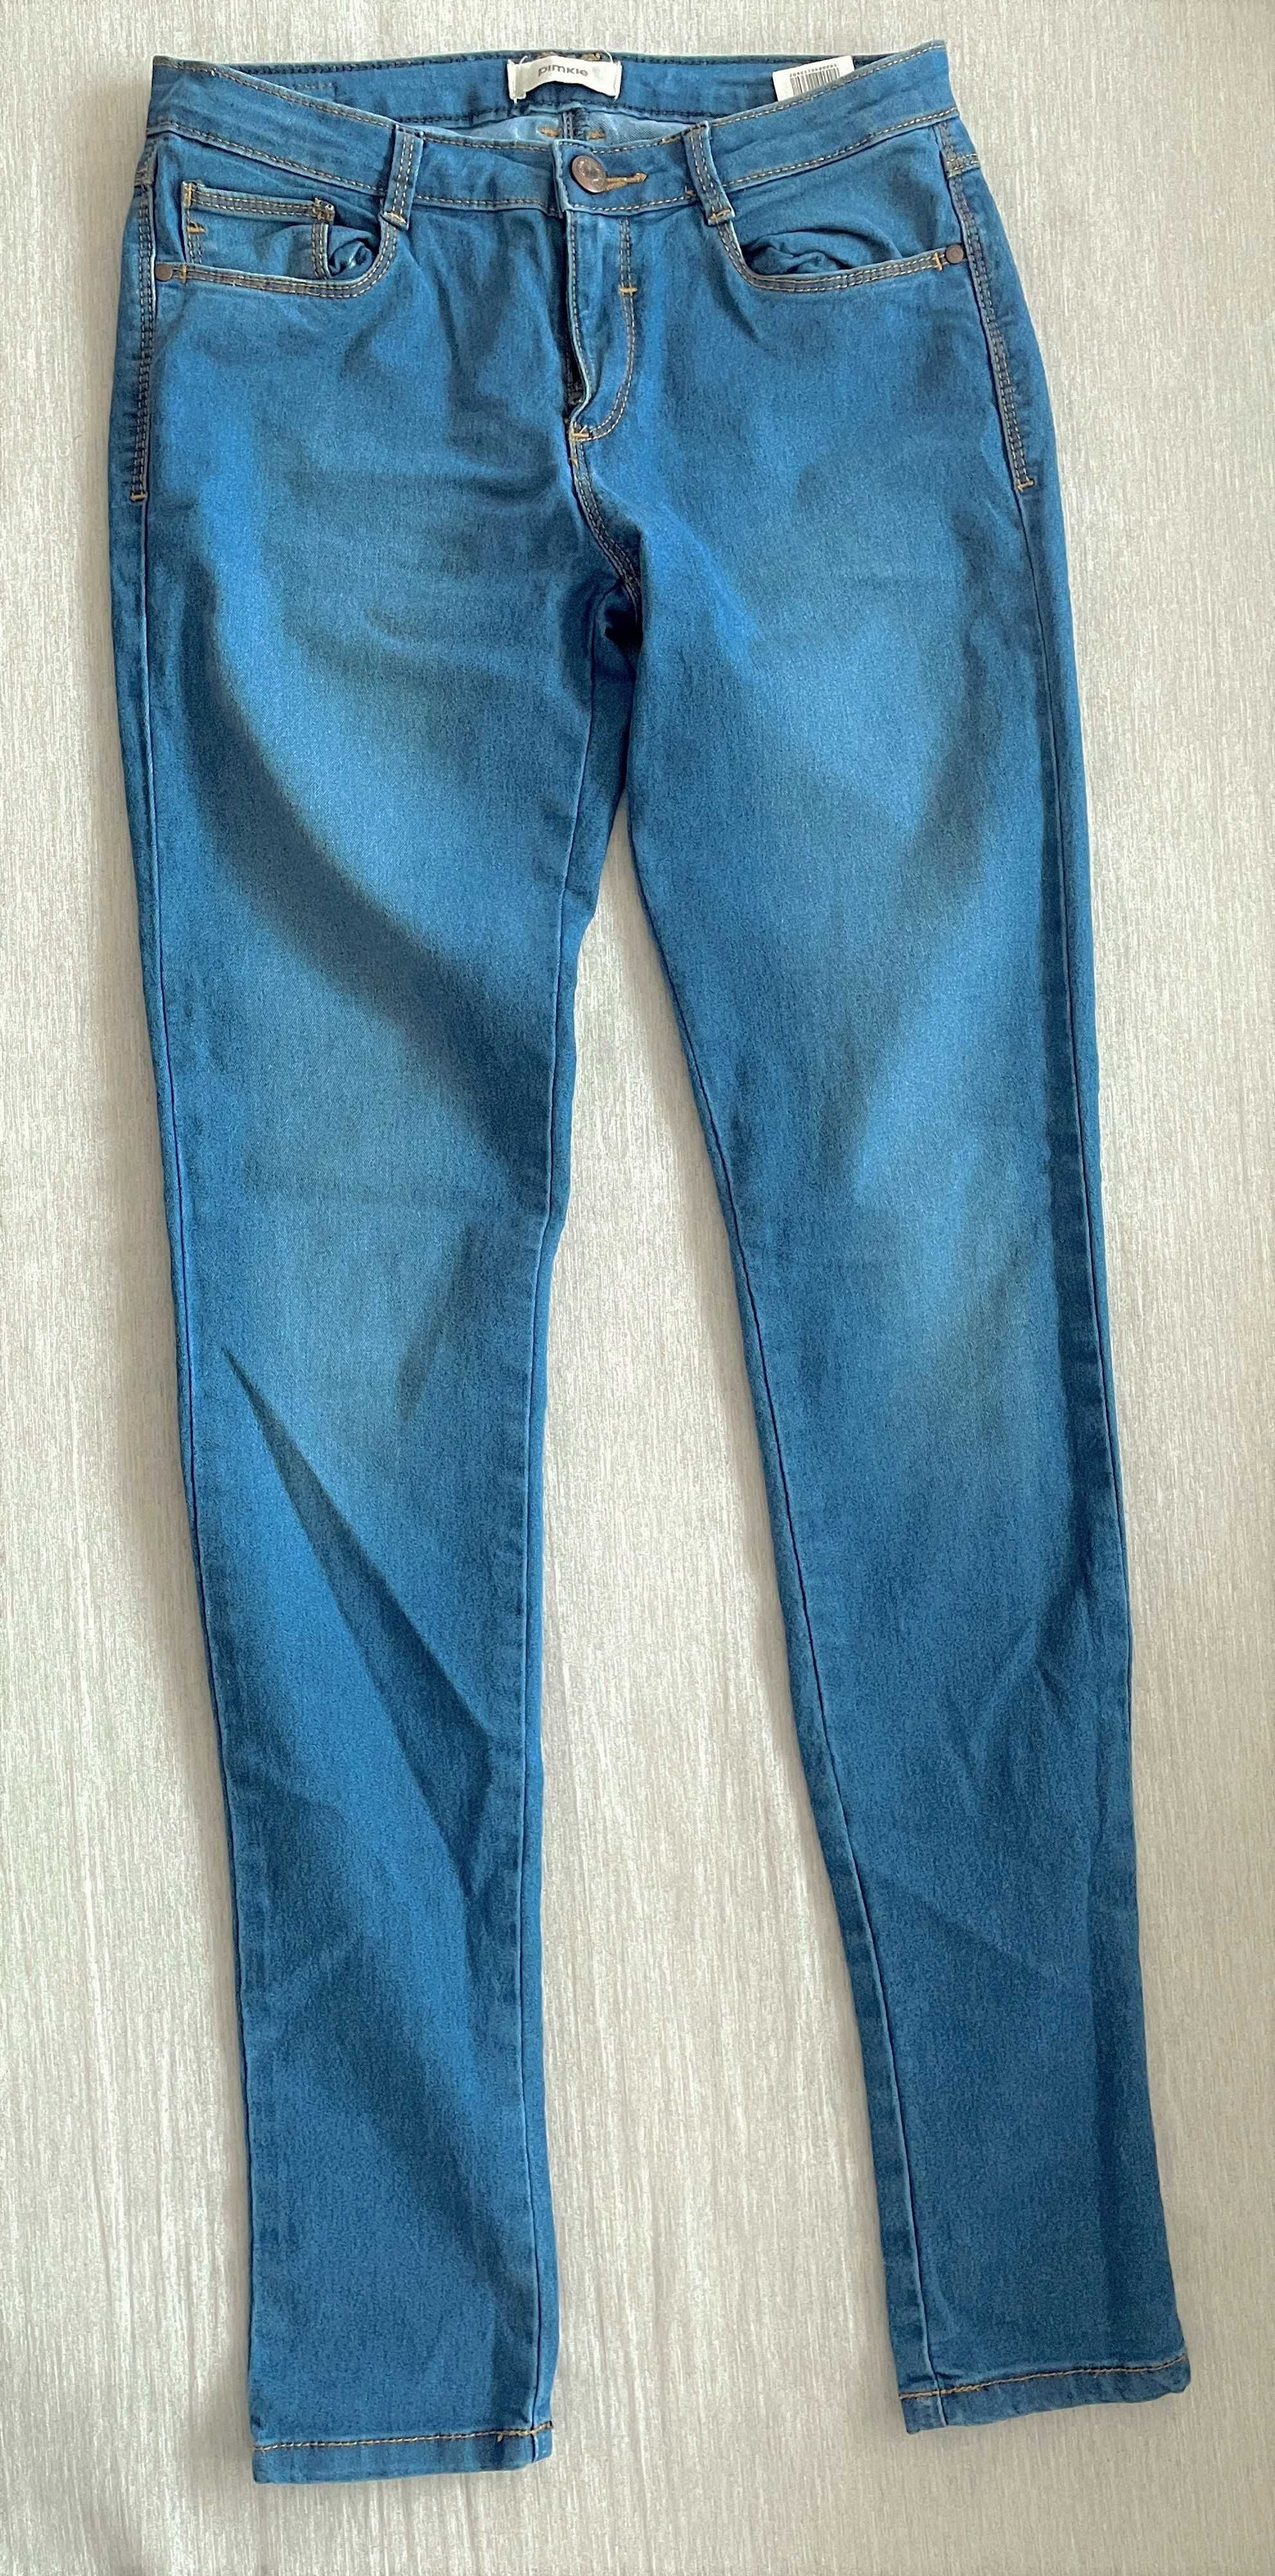 Spodnie jeansowe - ciemny jeans Pimkie